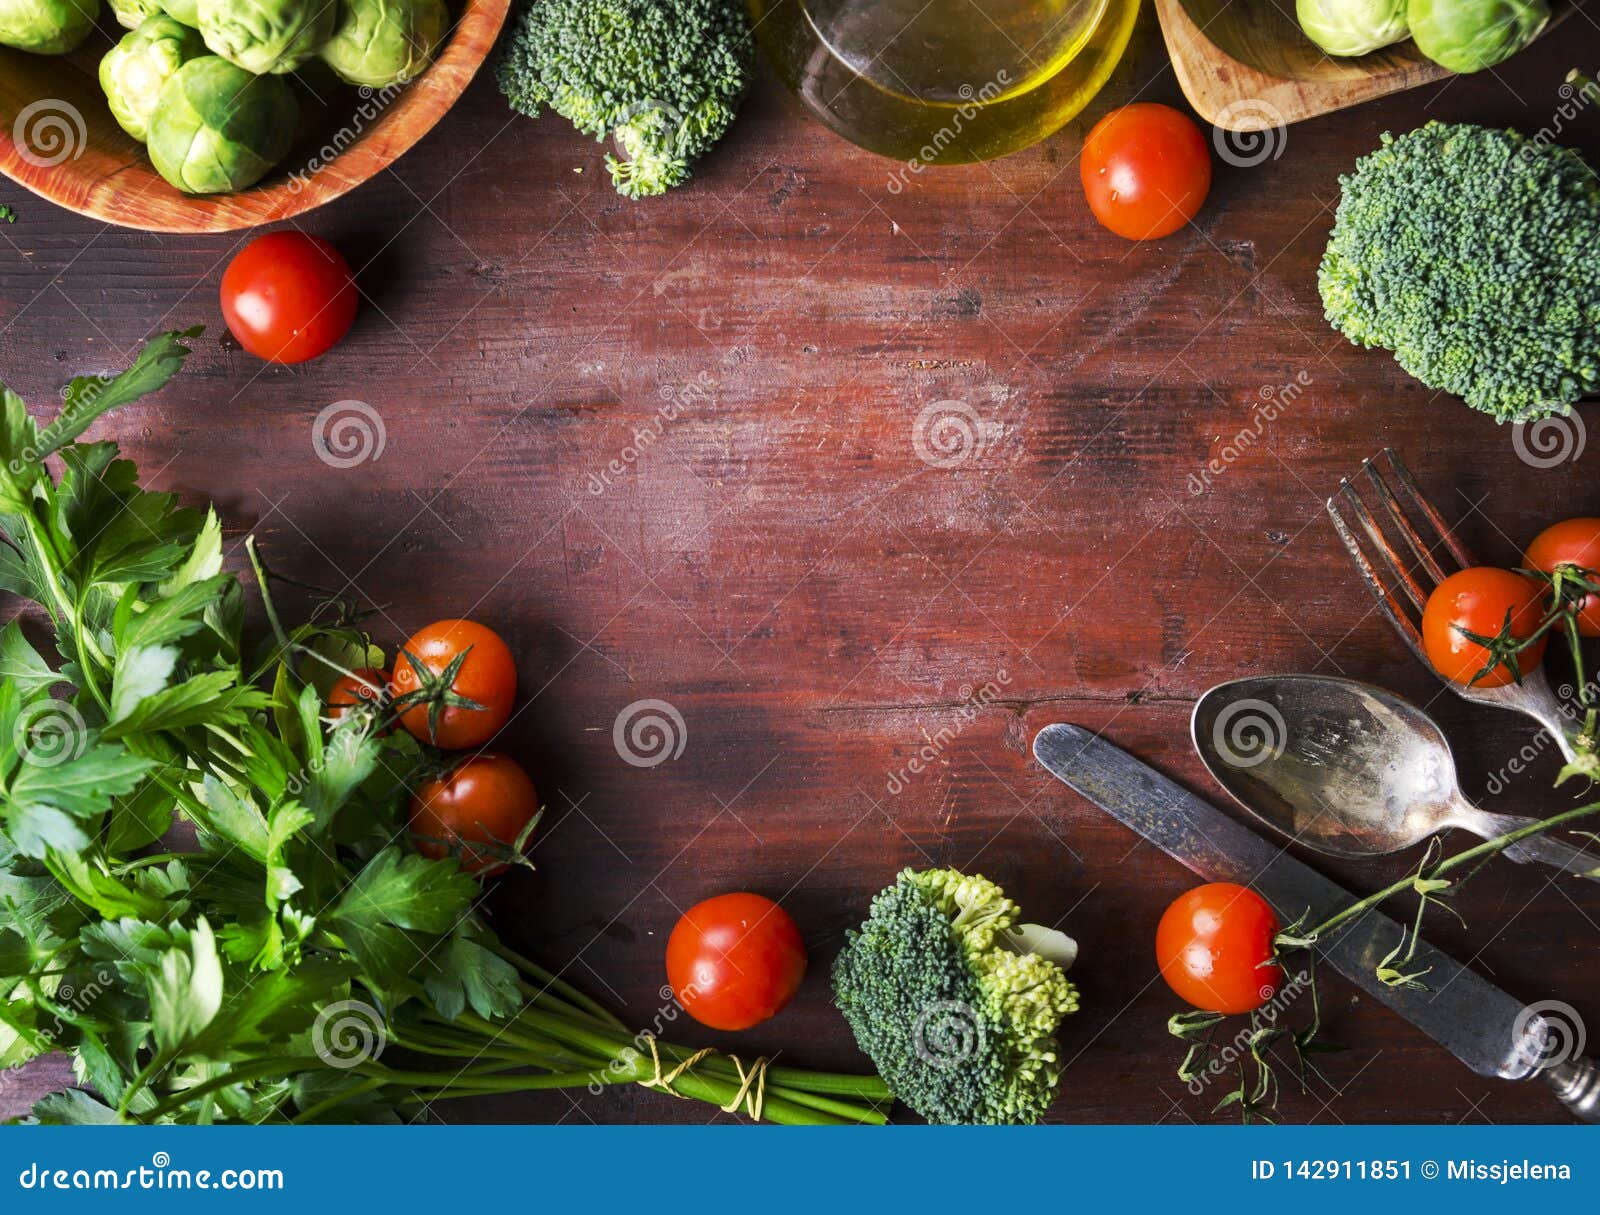 Взгляд сверху здоровой рамки пищевых ингредиентов на винтажном деревянном столе Граница смешивания овоща Superfood на деревенской предпосылке сверху Томат вишни, росток Брюссель, брокколи, петрушка, зеленые цвета и накладные расходы оливкового масла